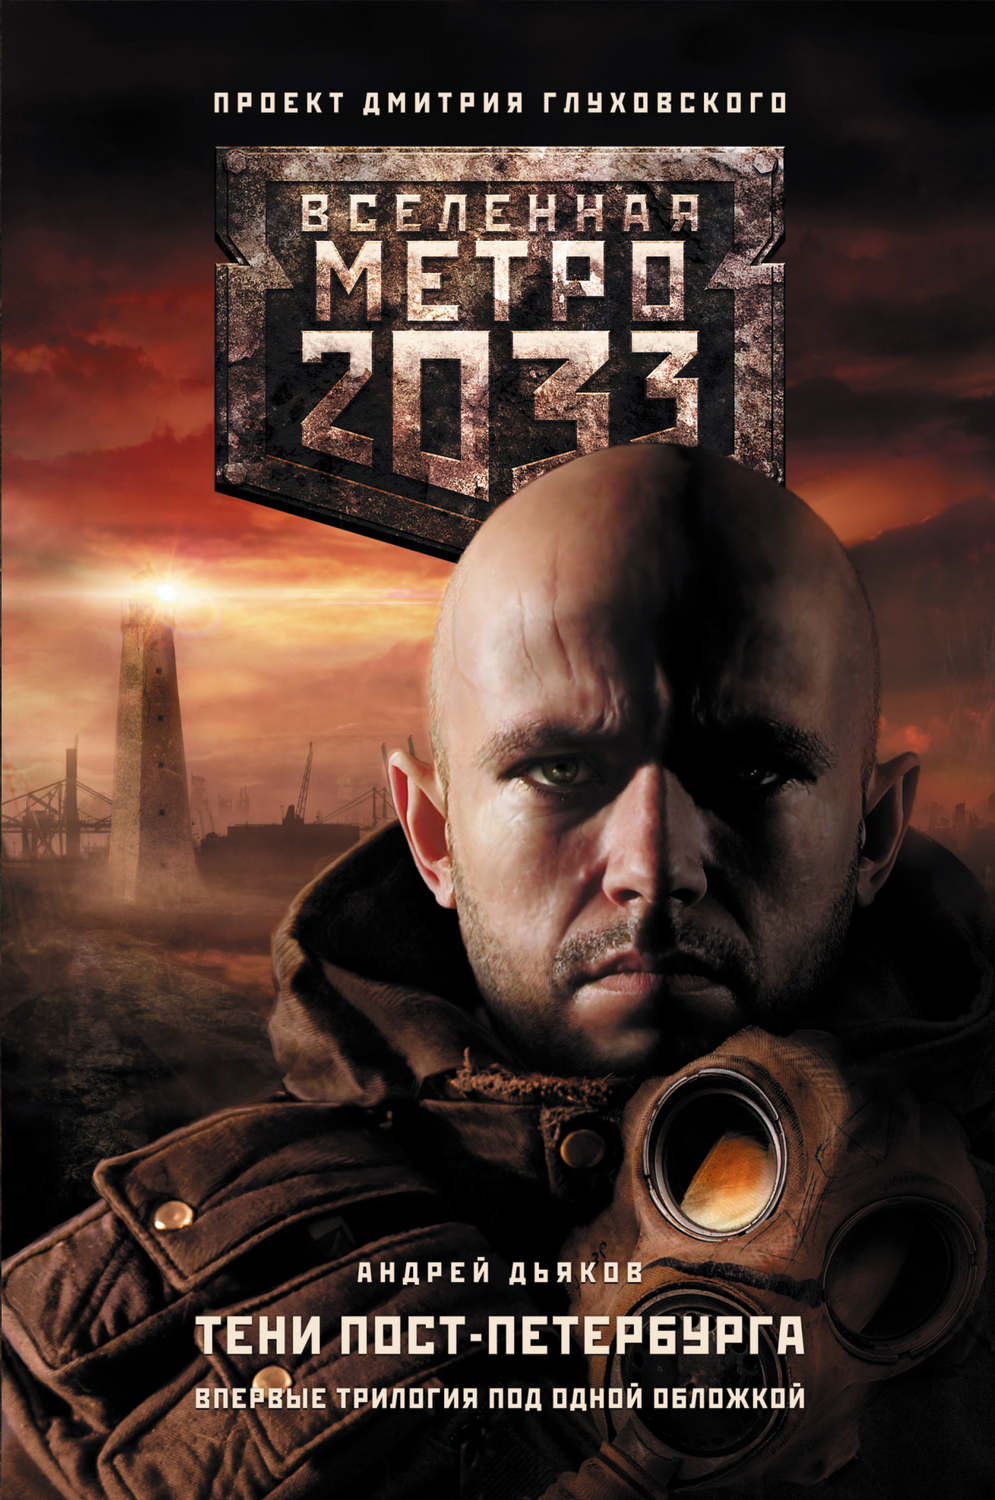 Метро 2034 скачать книгу на андроид